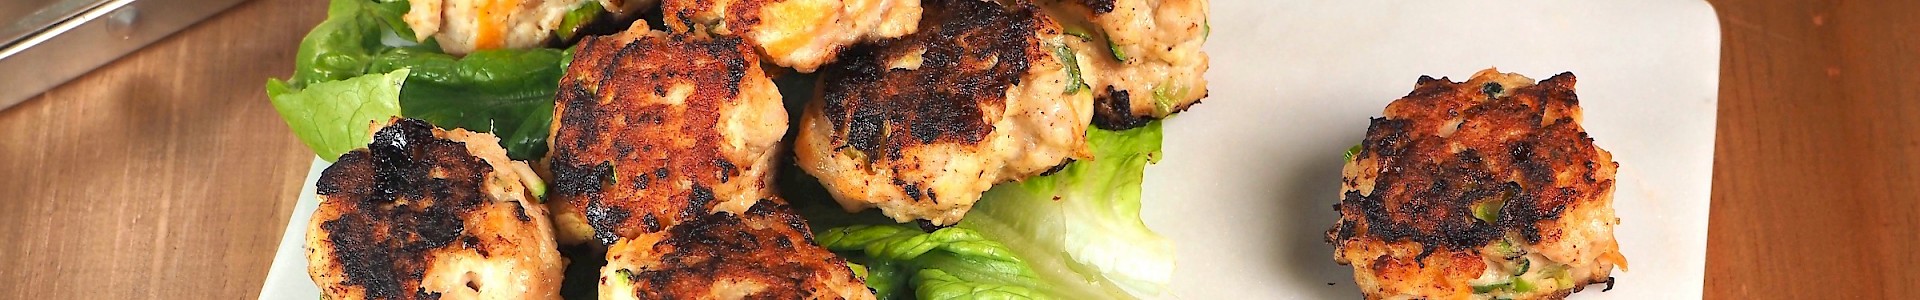 Chicken and Veg Bites